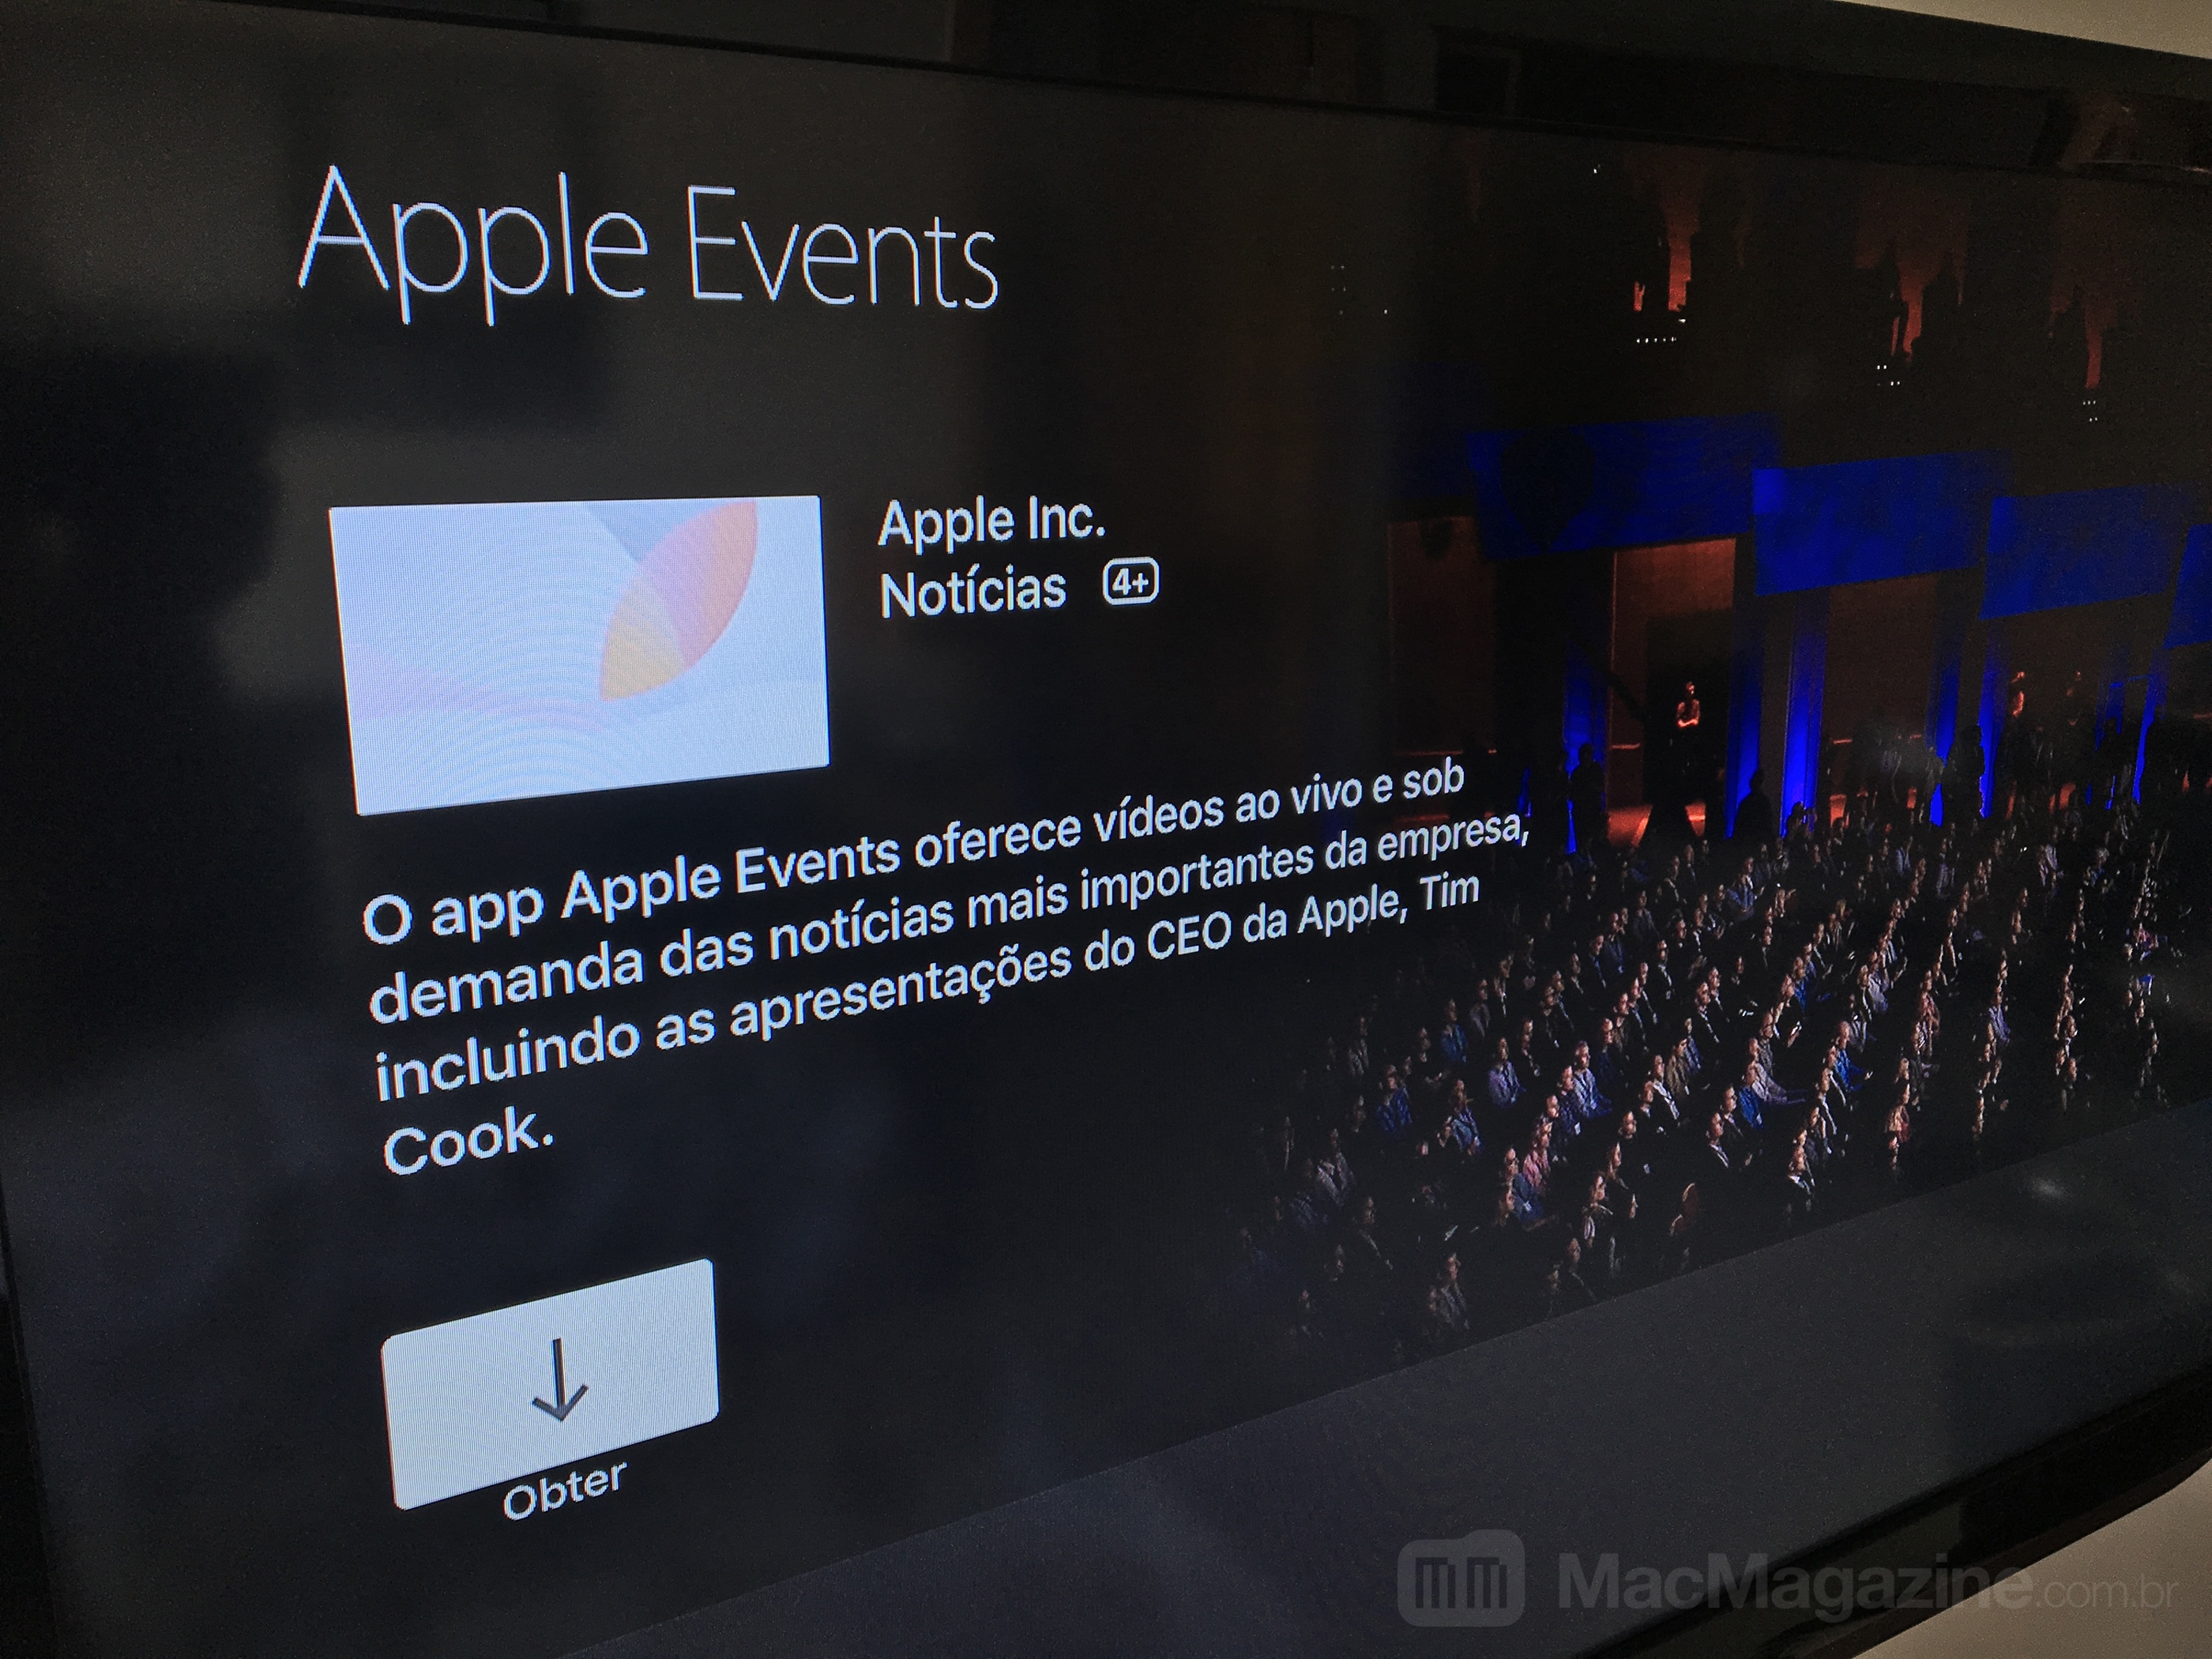 Apple Events on Apple TV